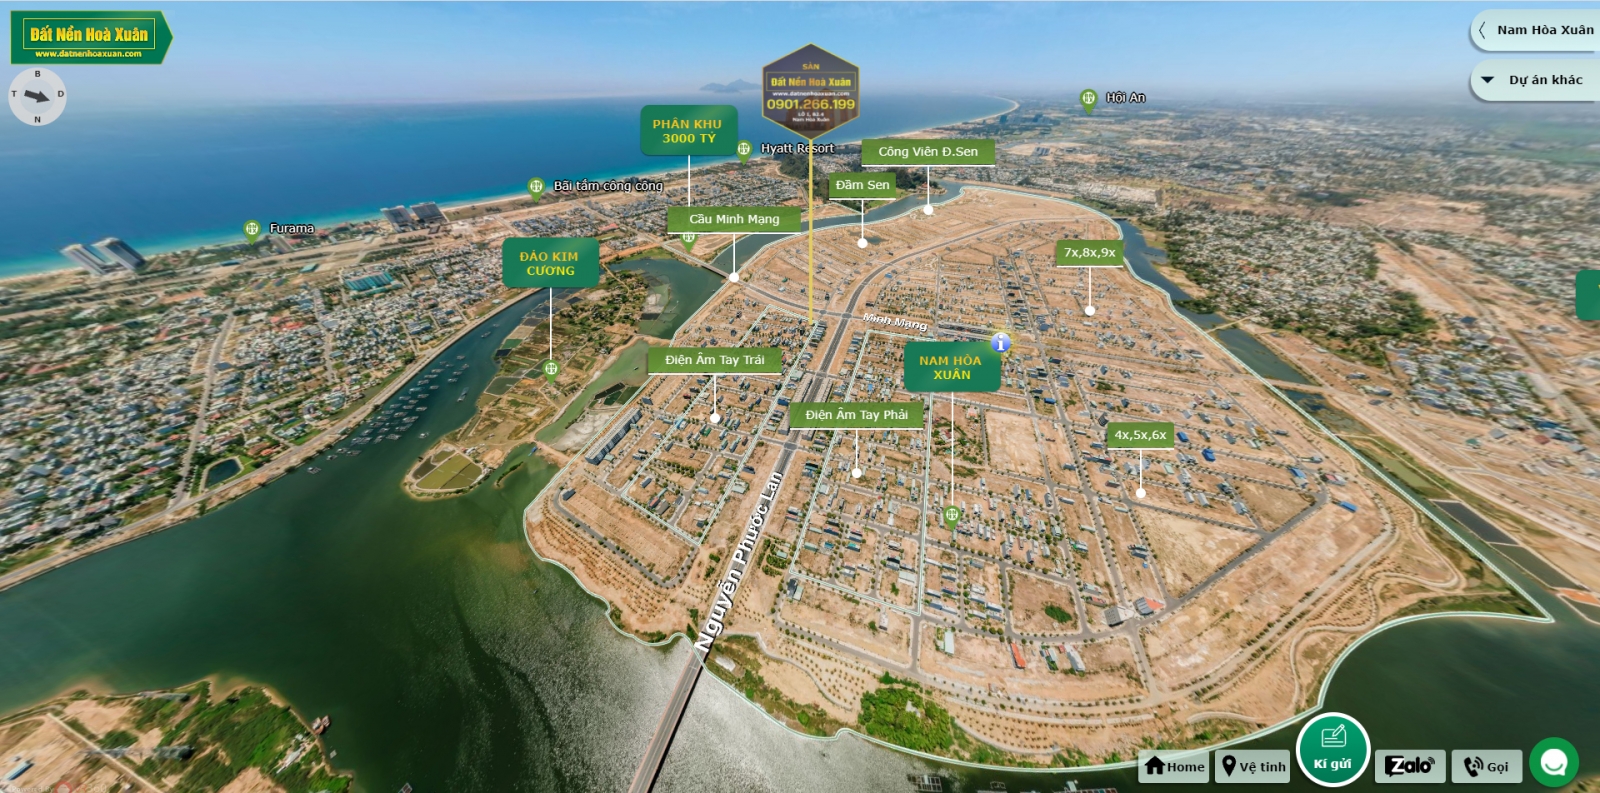 Bản đồ 360 Hòa Xuân thực tế ảo 360 độ đầu tiên Đà Nẵng 2021